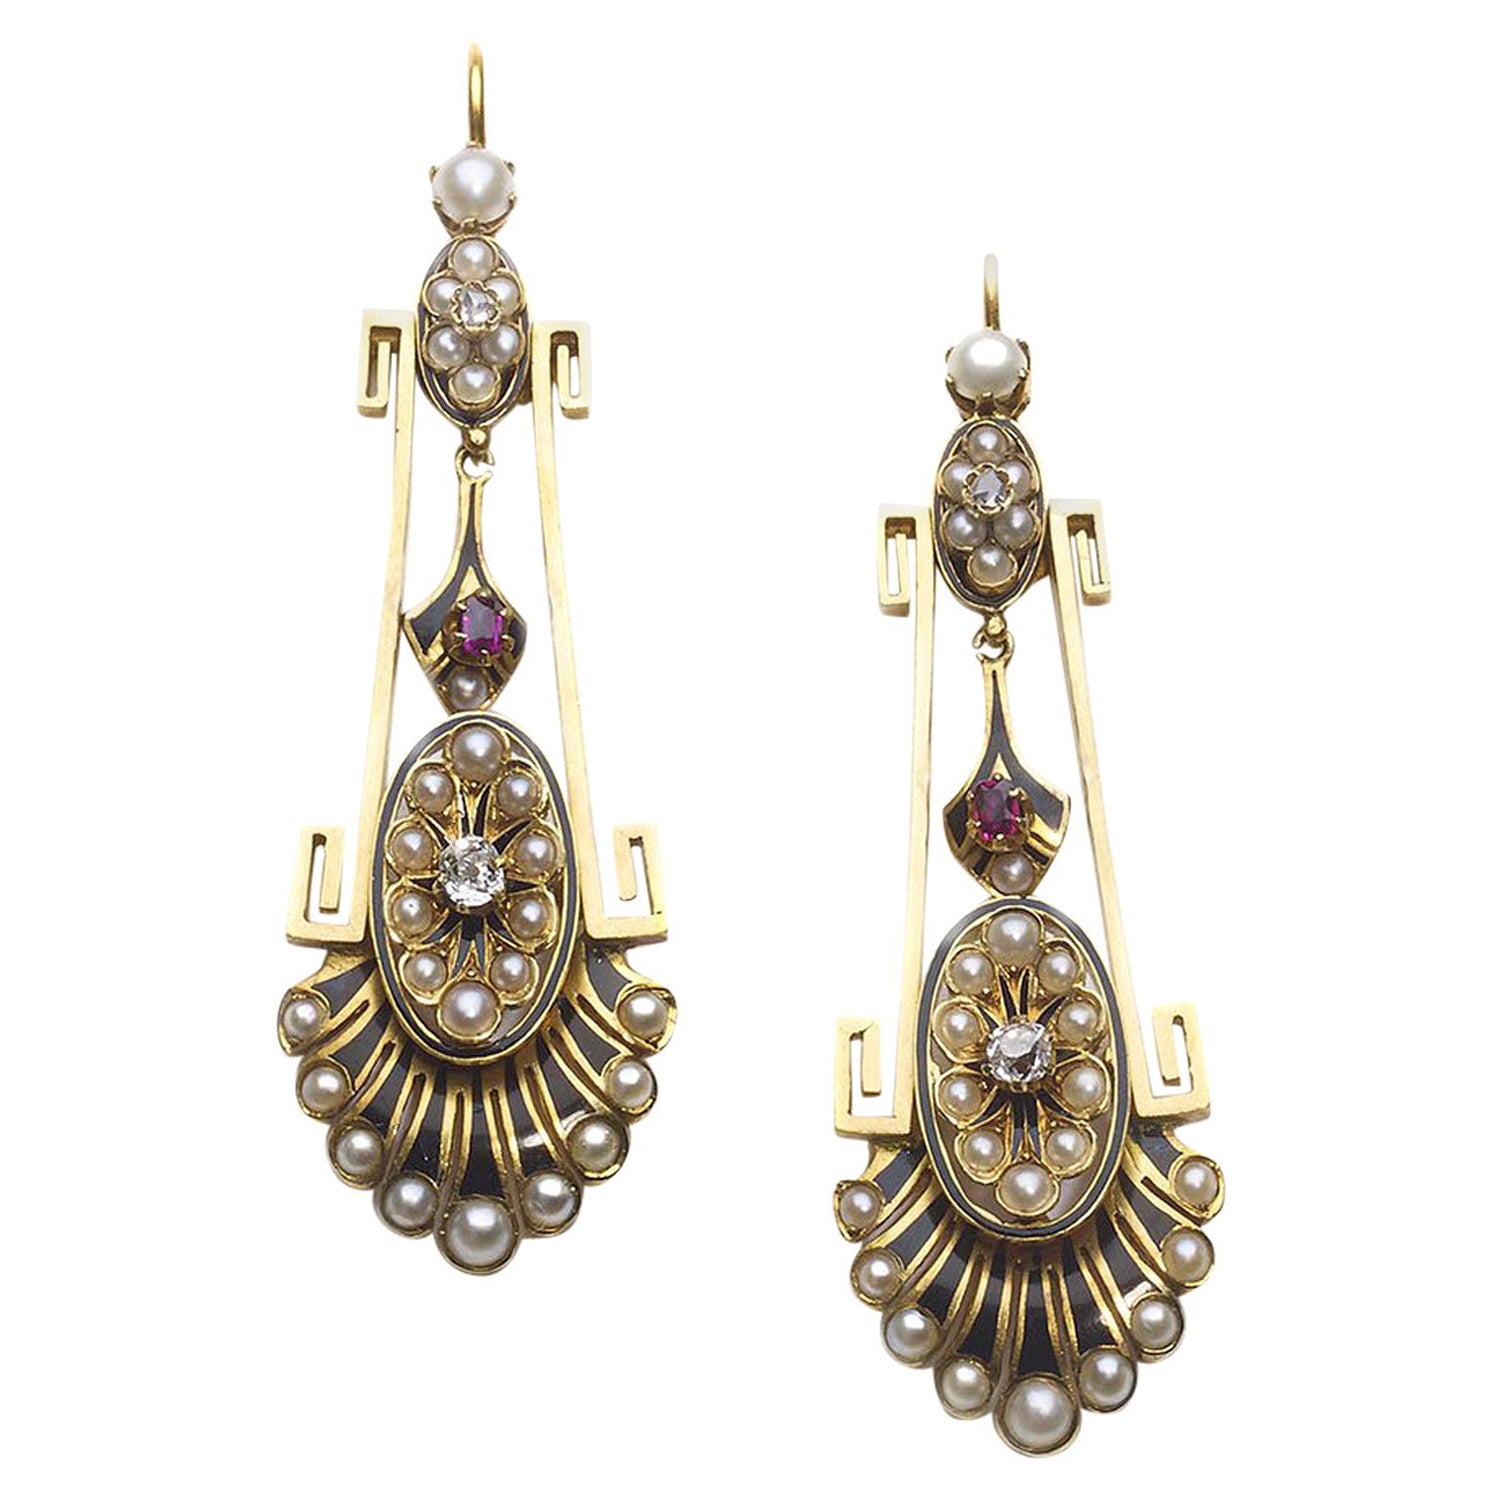 Boucles d'oreilles en or, perles, diamants, émail et rubis de l'Aesthetic Movement de l'époque victorienne